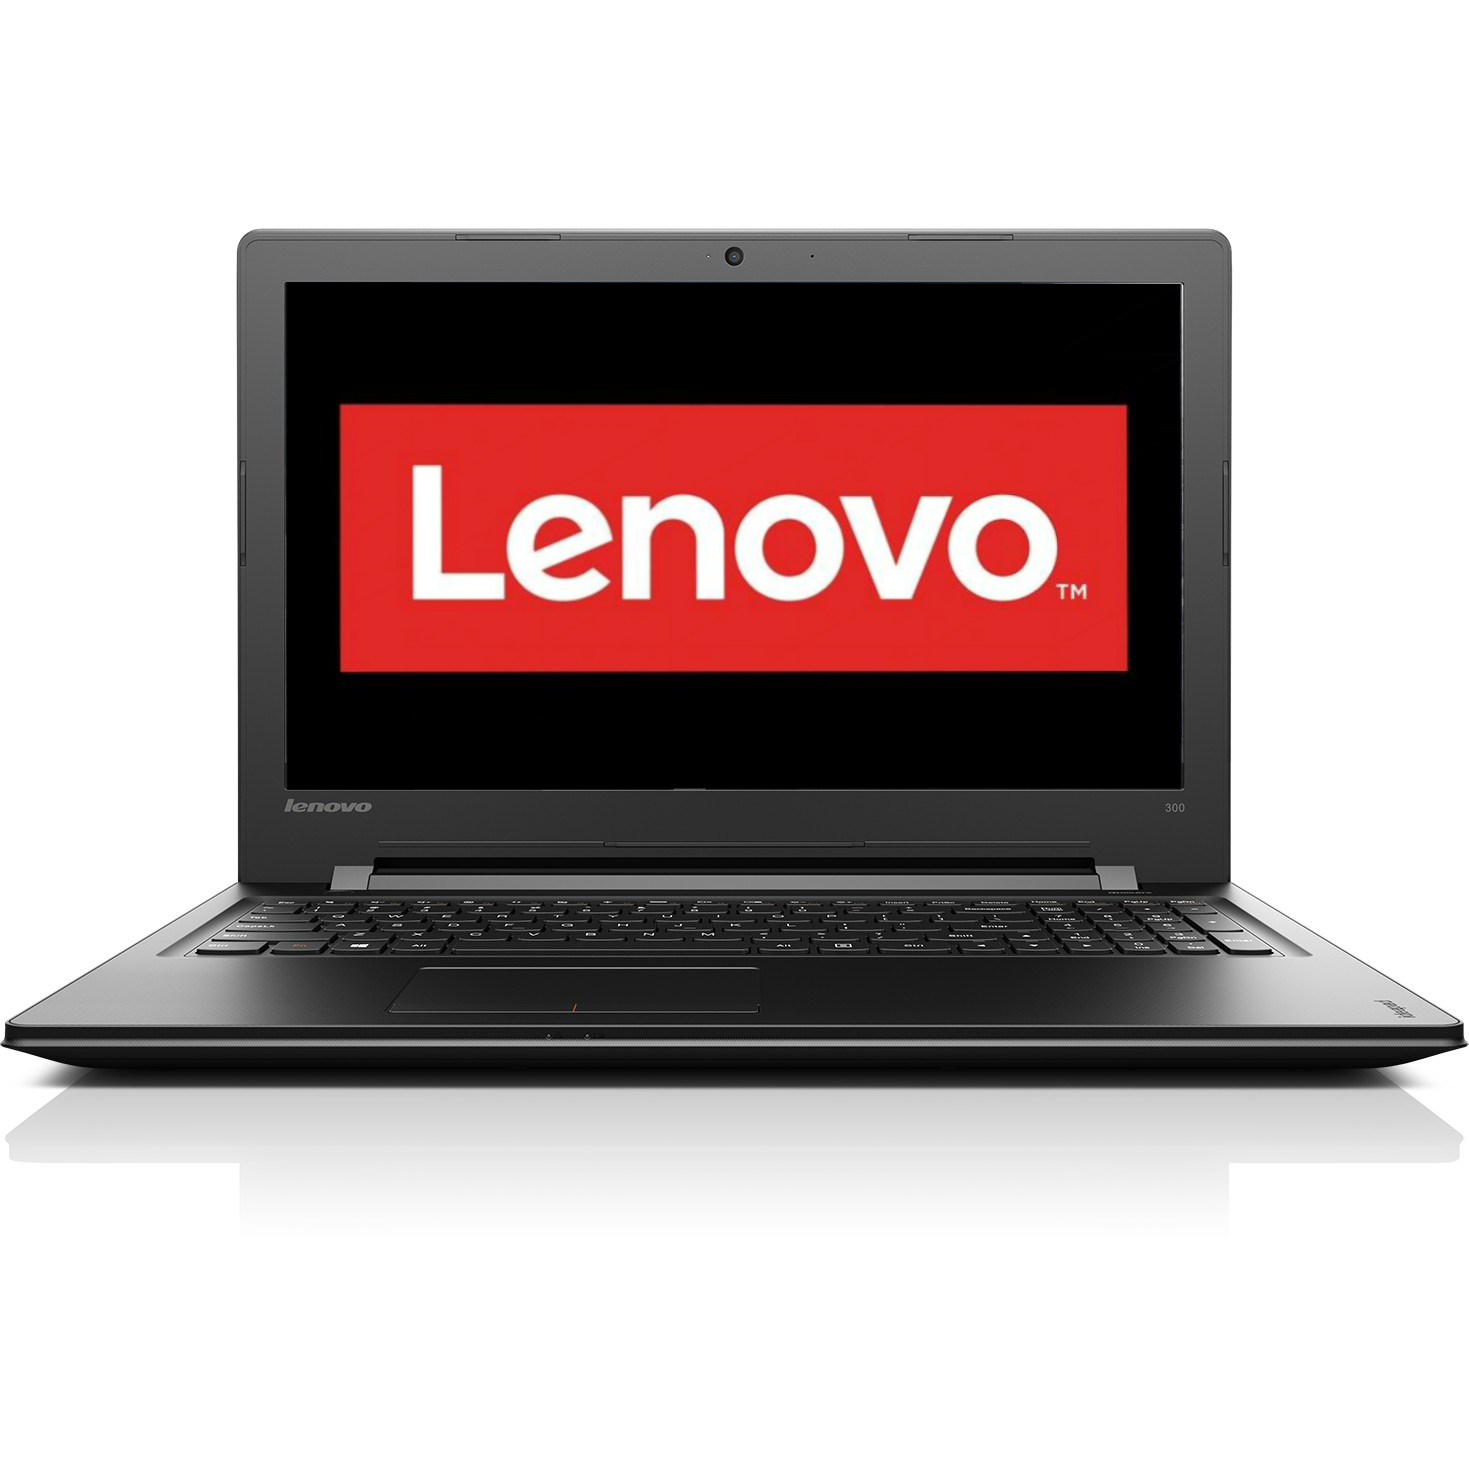 Laptop Lenovo IdeaPad 300, Intel Core i7-6500U, 4GB DDR3, HDD 1TB, AMD Radeon R5 M330 2GB, Free DOS